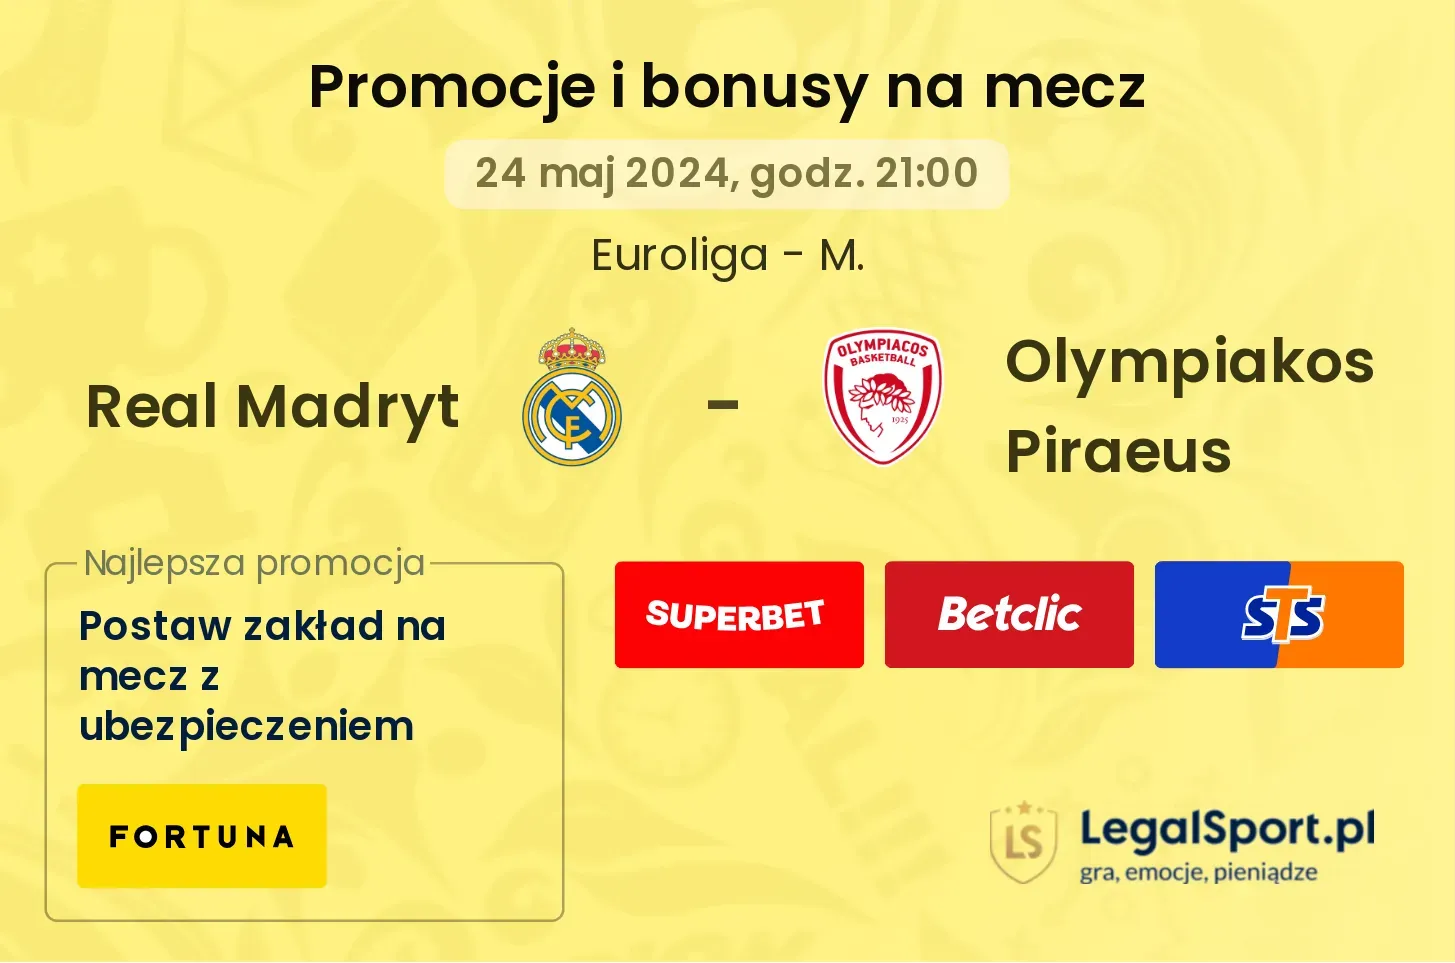 Real Madryt - Olympiakos Piraeus promocje bonusy na mecz